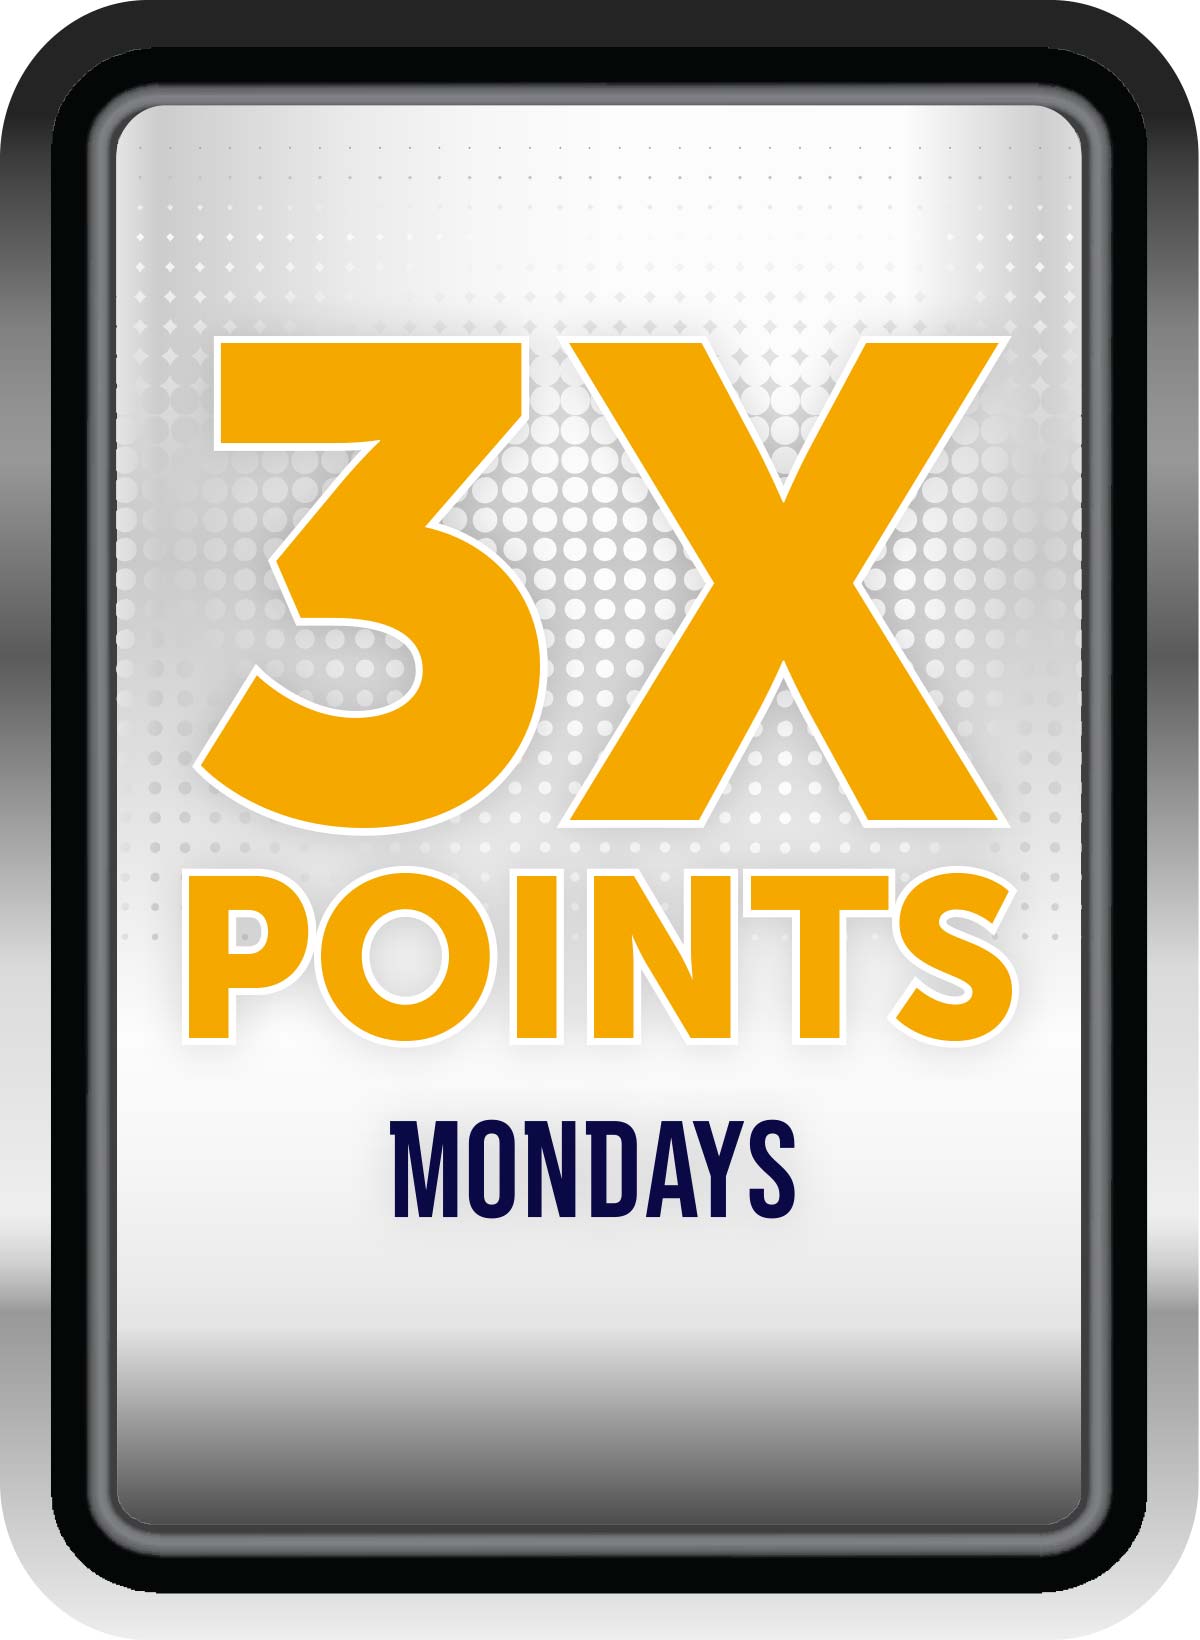 3X Points Mondays